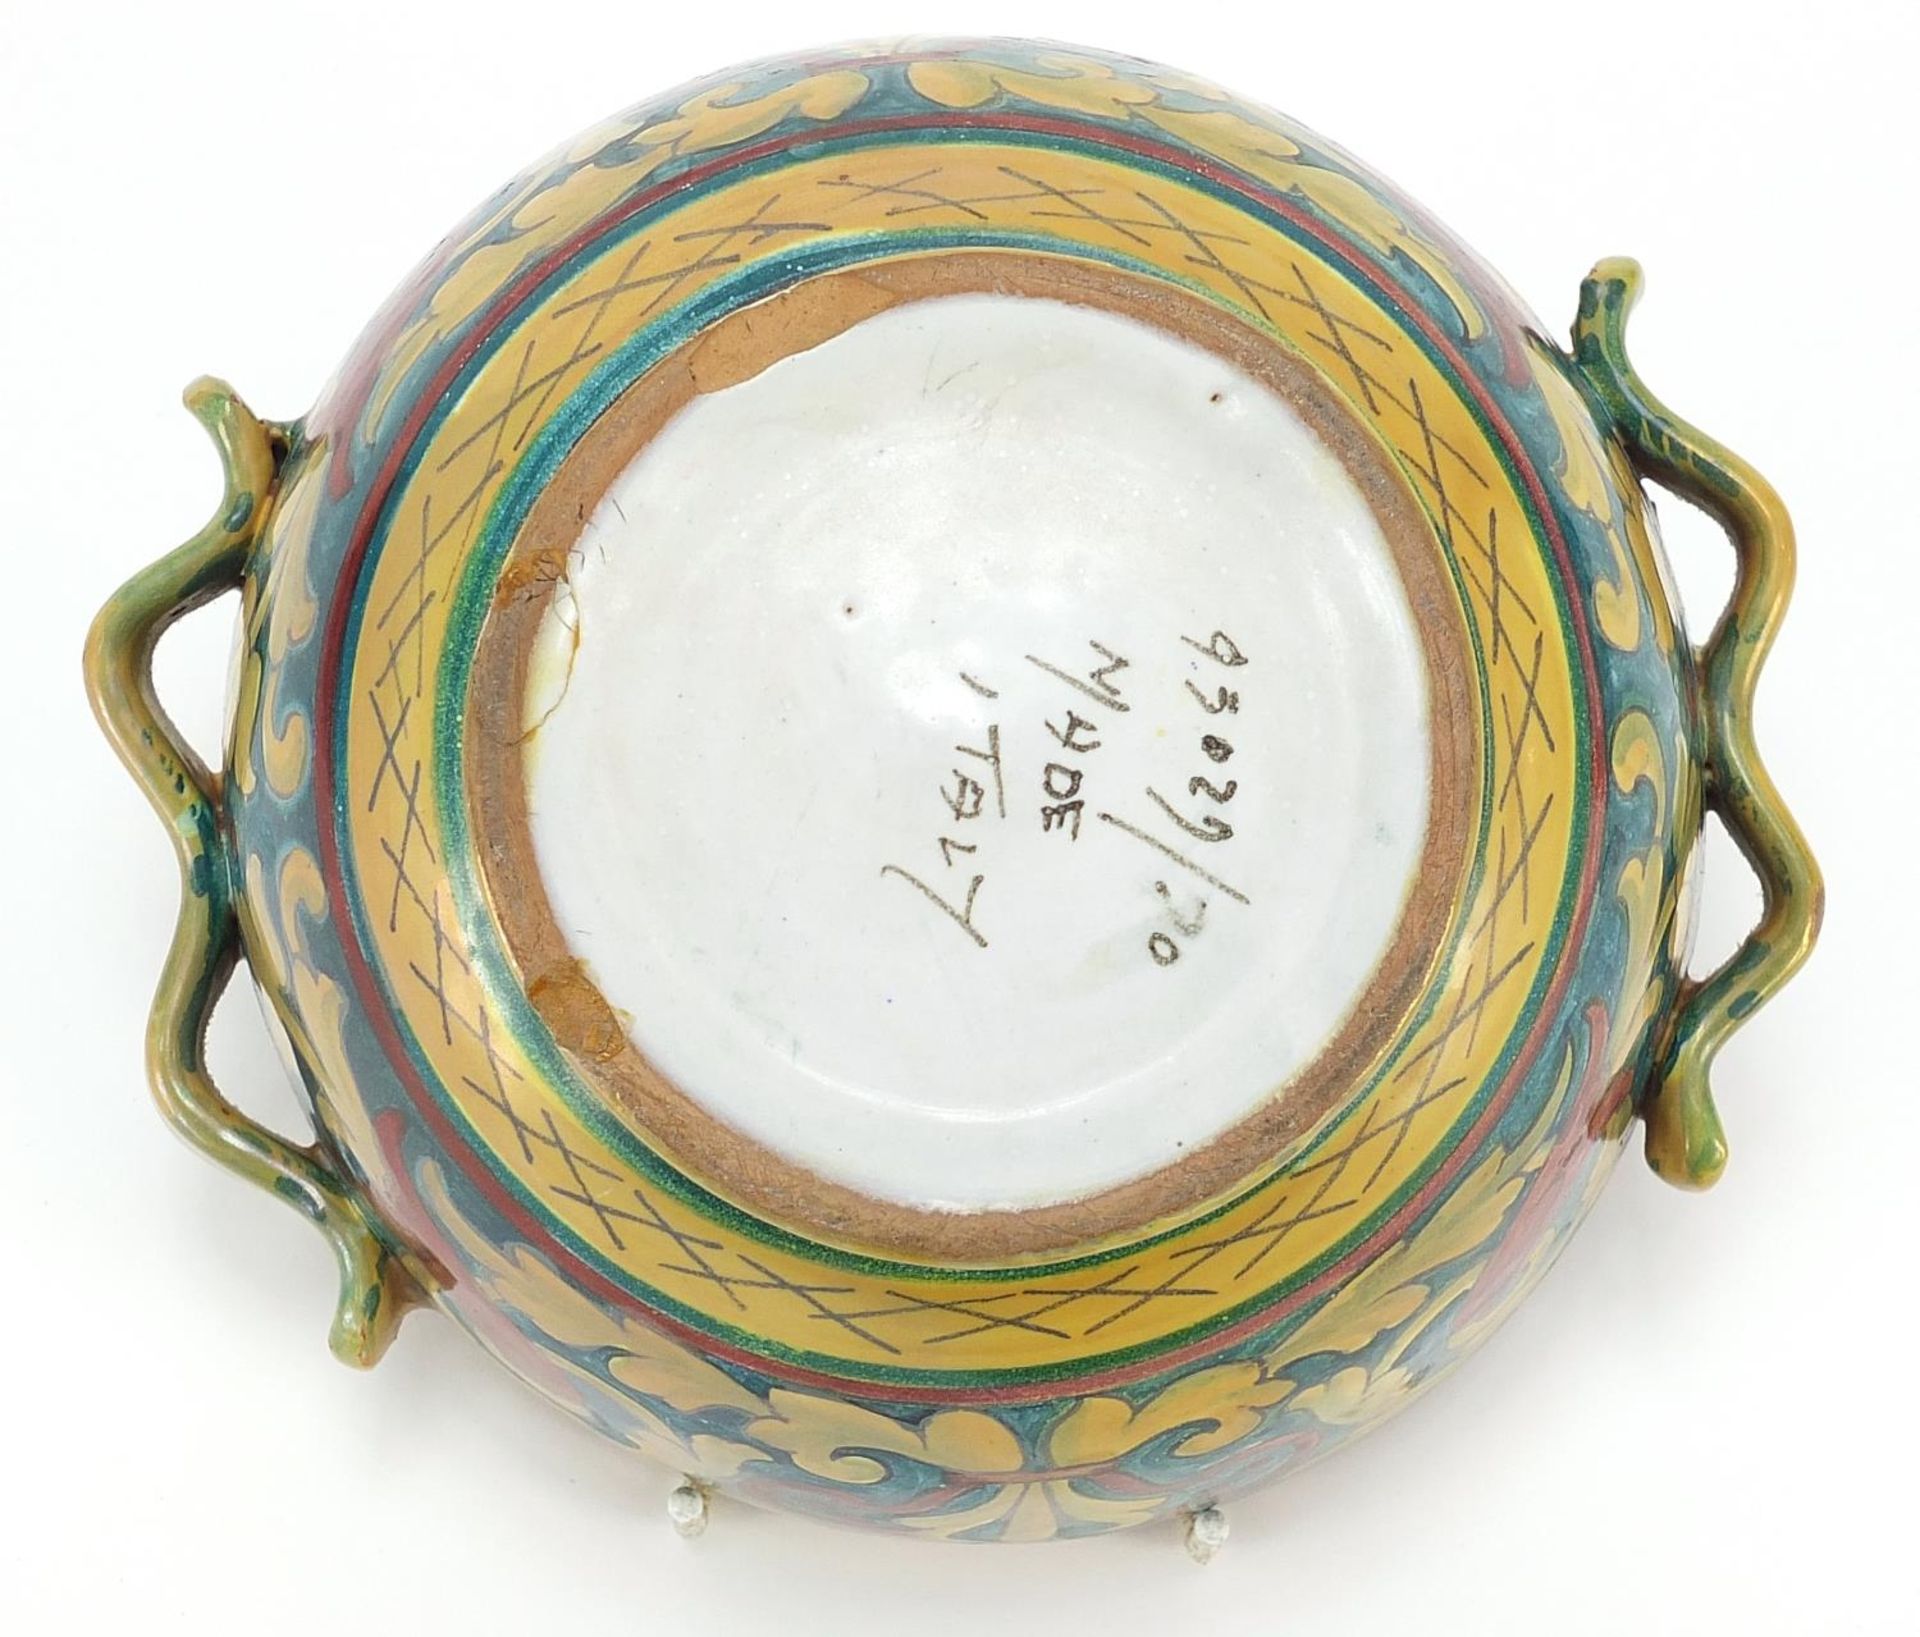 Italian lustre bowl in the style of William de Morgan, 18.5cm in diameter - Image 6 of 6